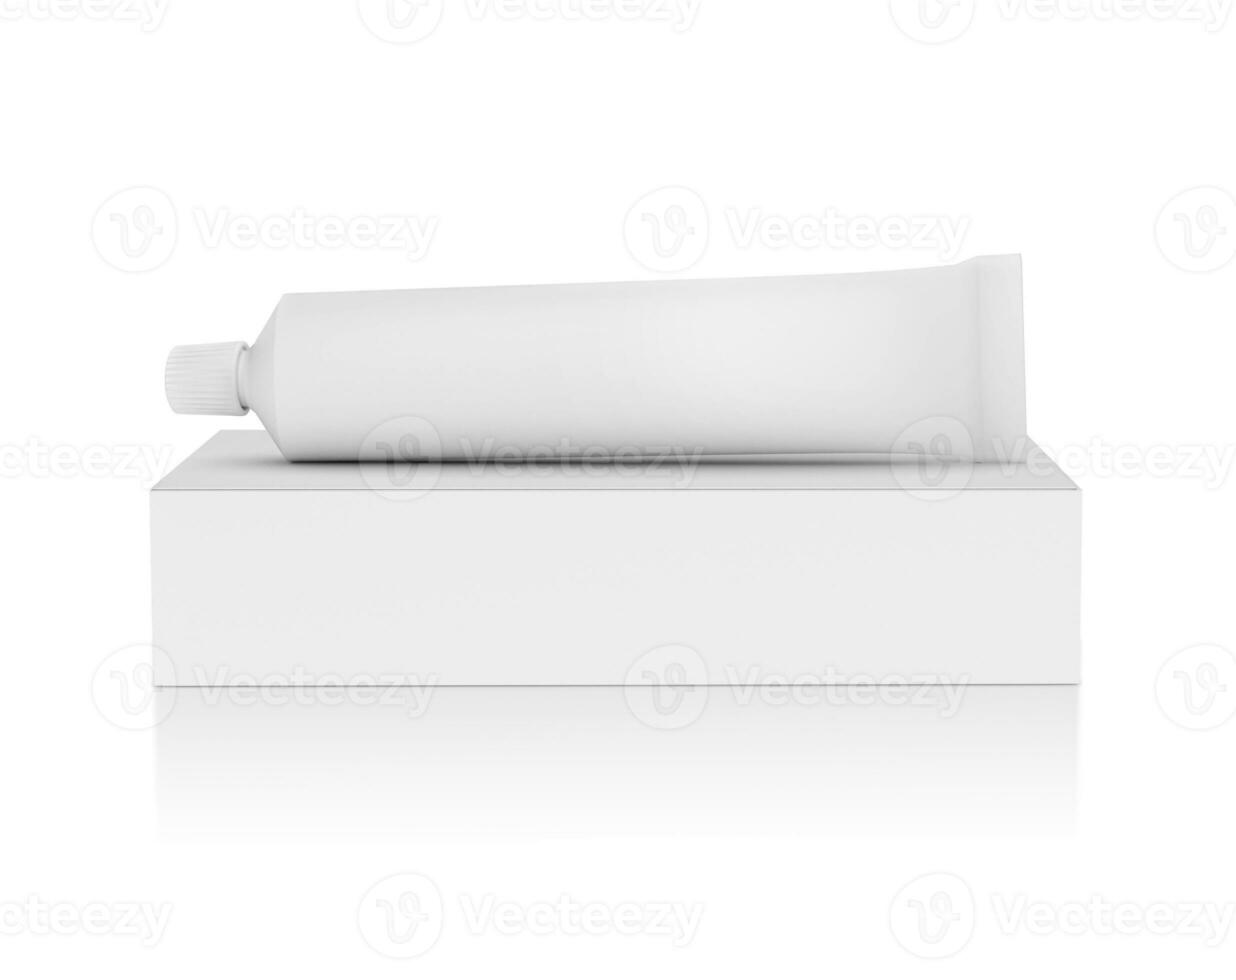 tube de médicament et emballage isolé sur fond blanc photo